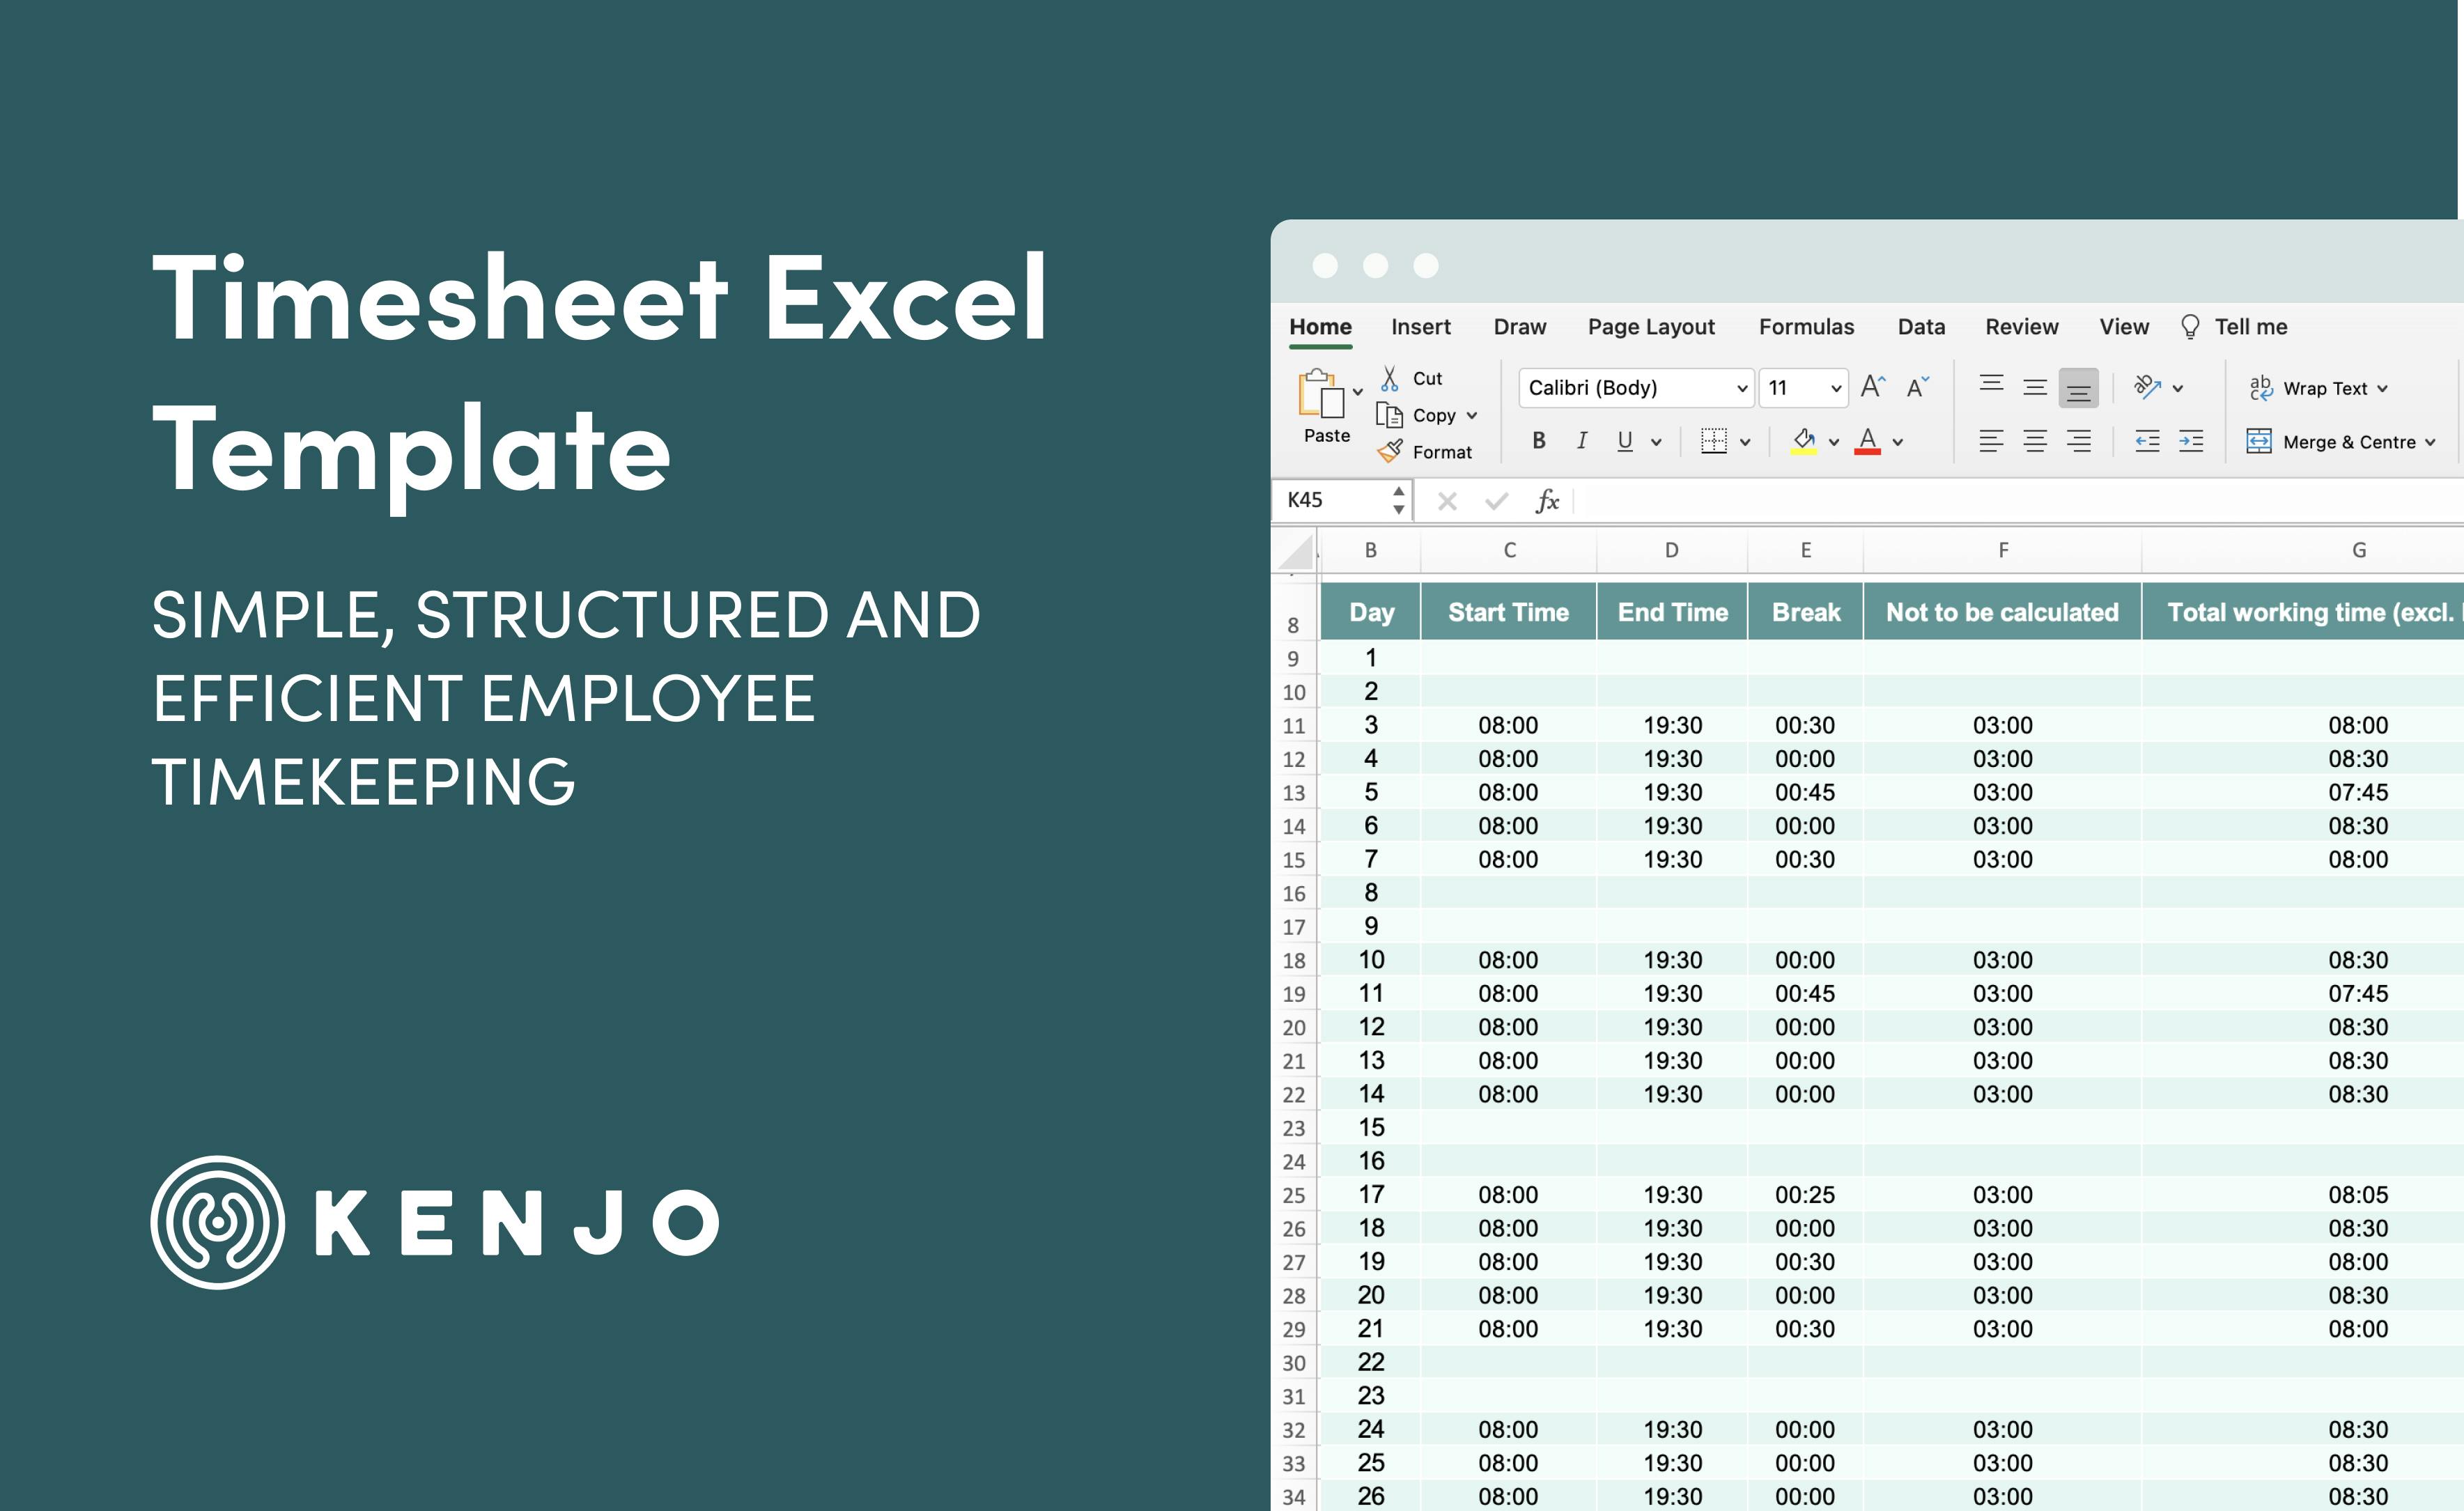 Kenjo Timesheet Excel Template